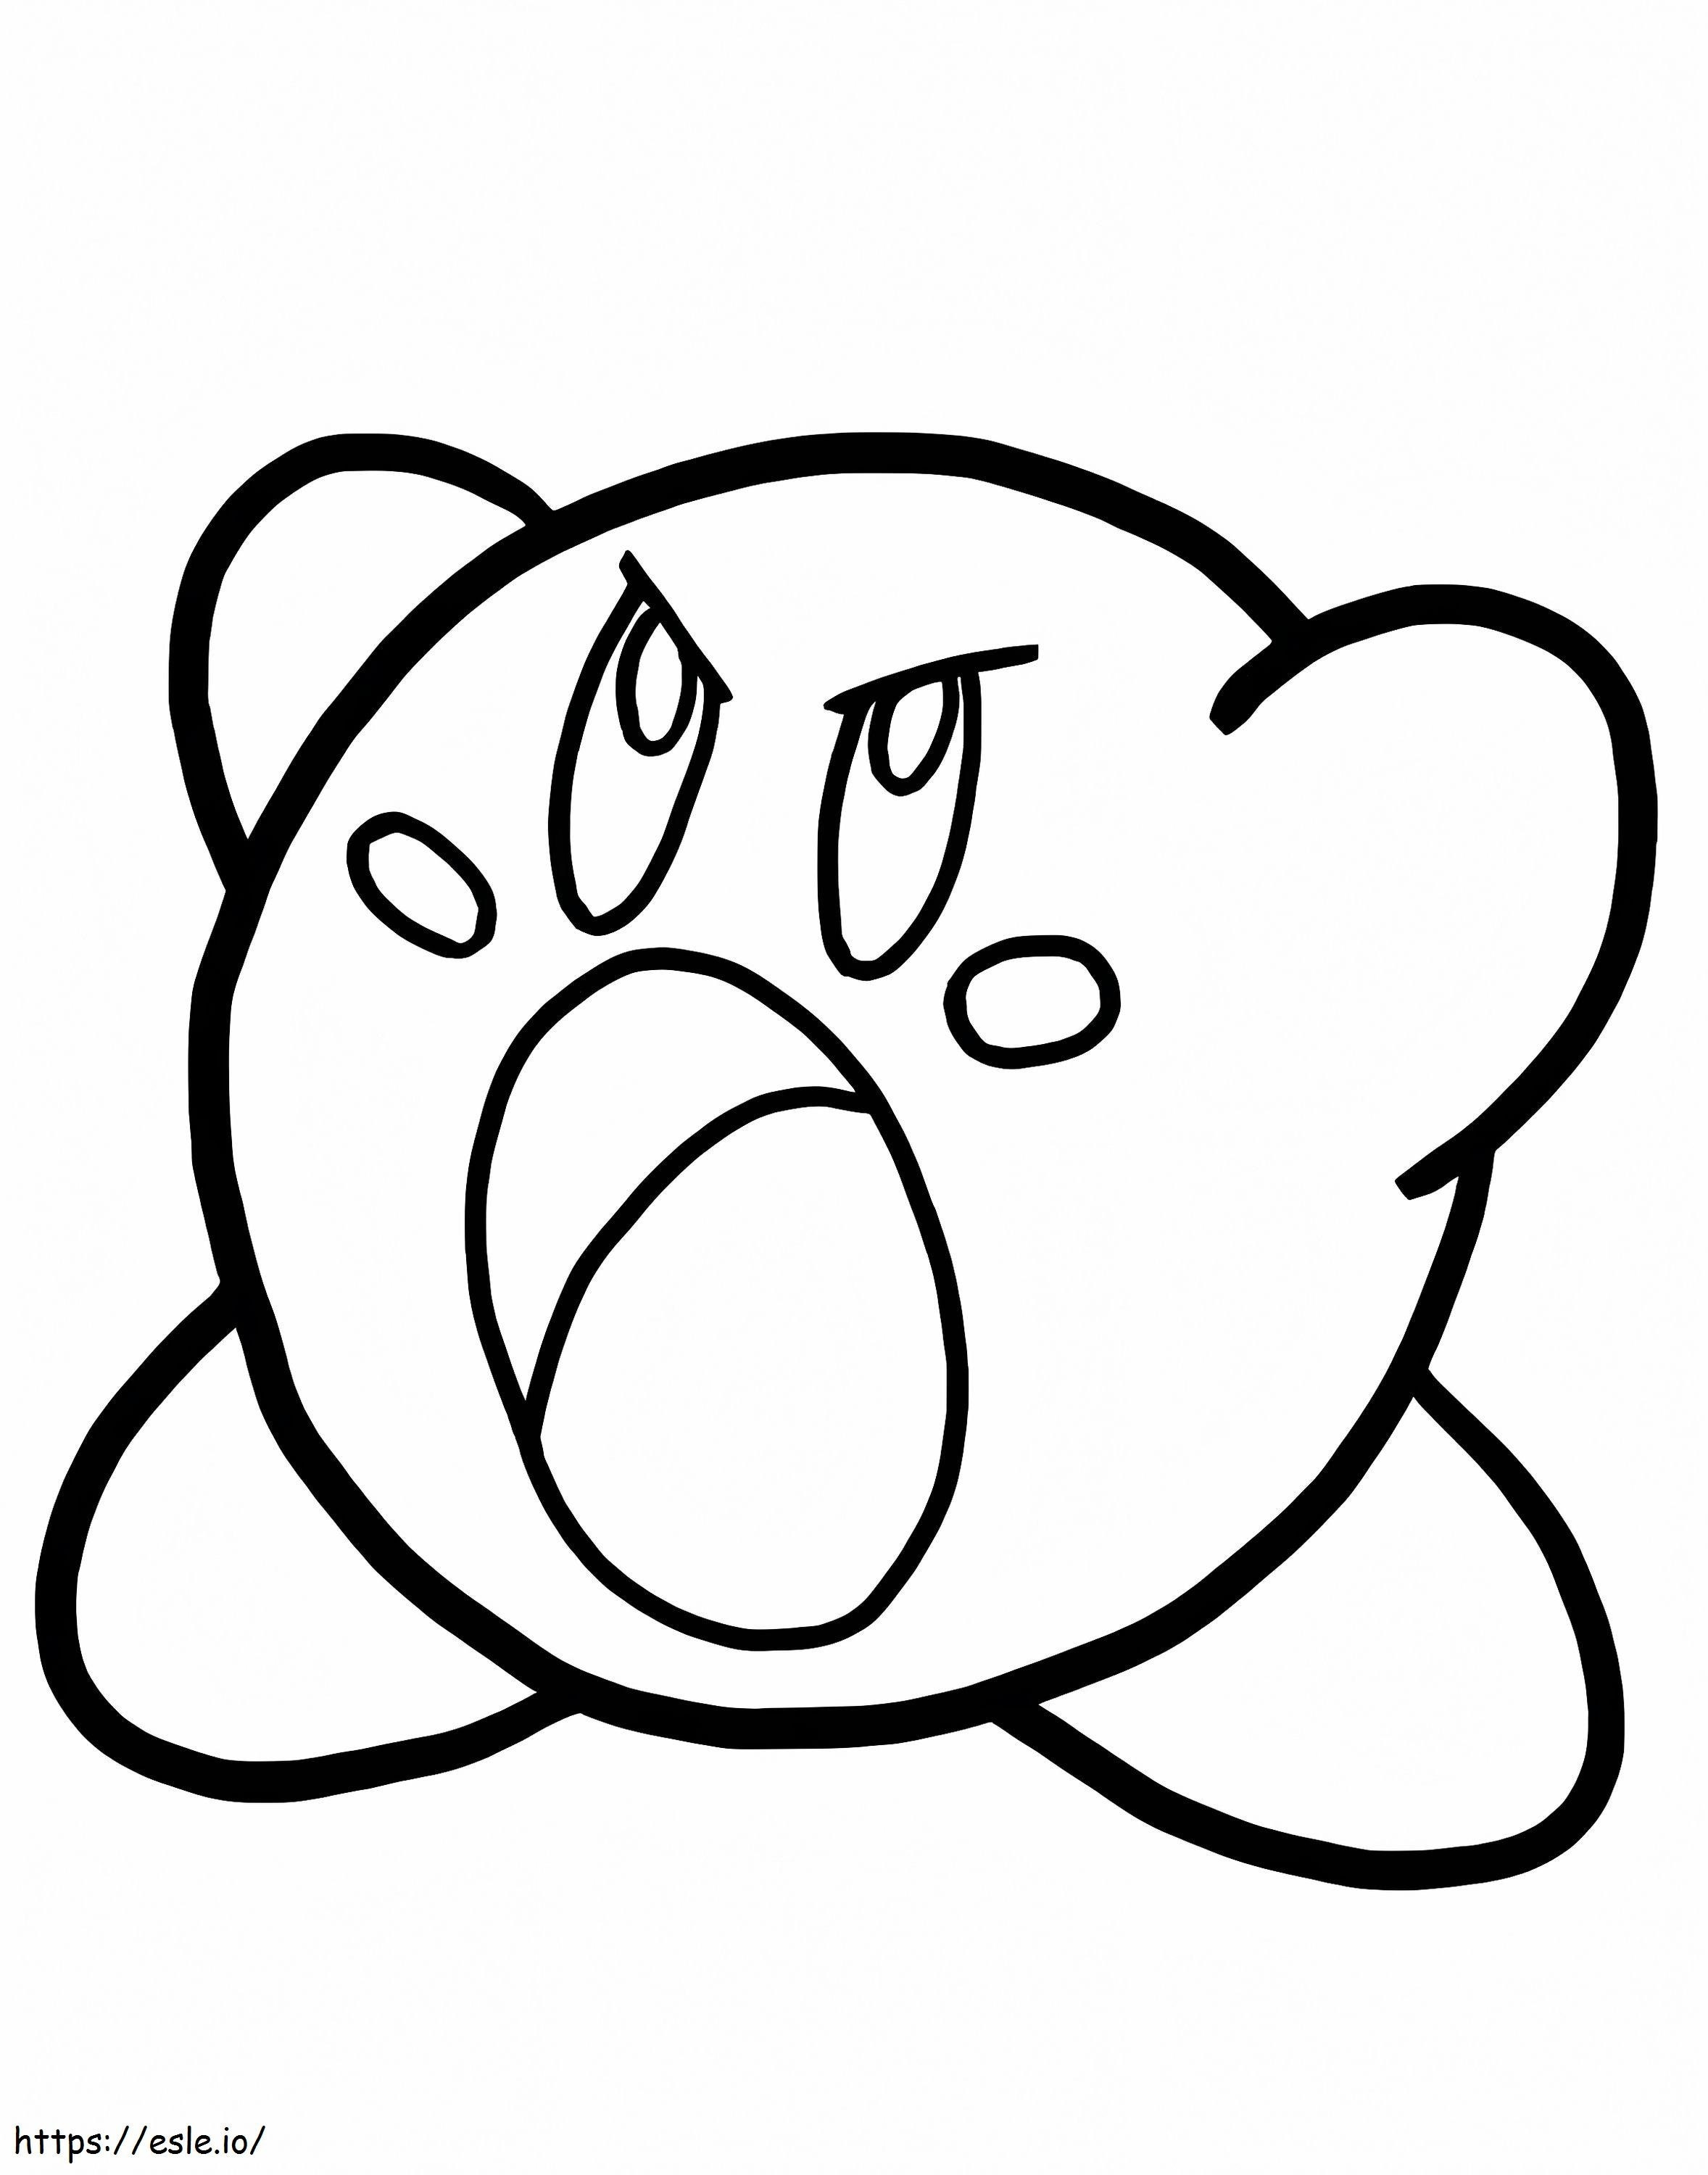 Wściekły Kirby kolorowanka